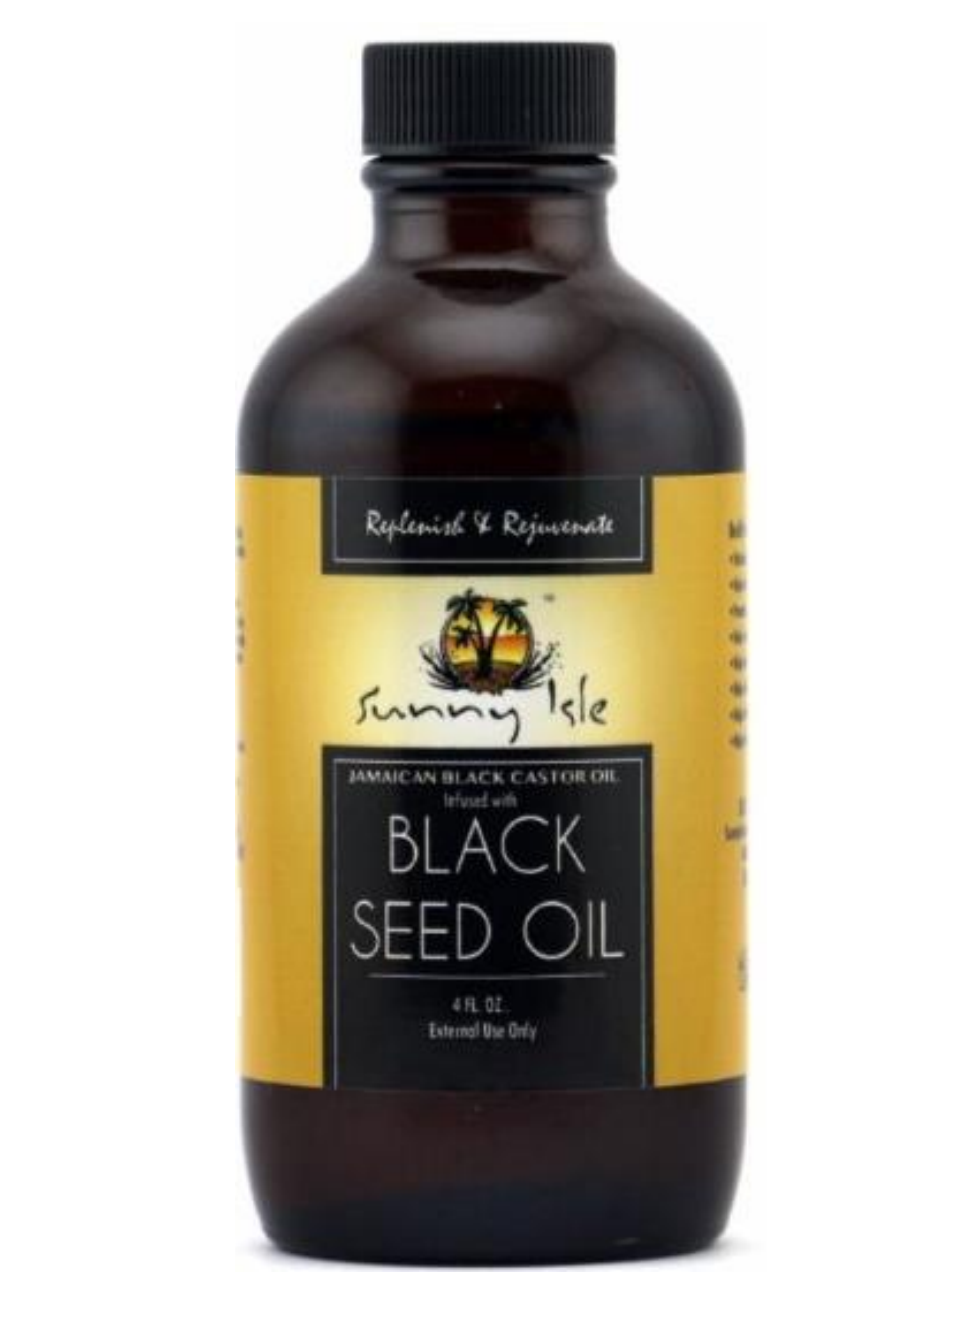 Black Seed Oil - Sunny Isle